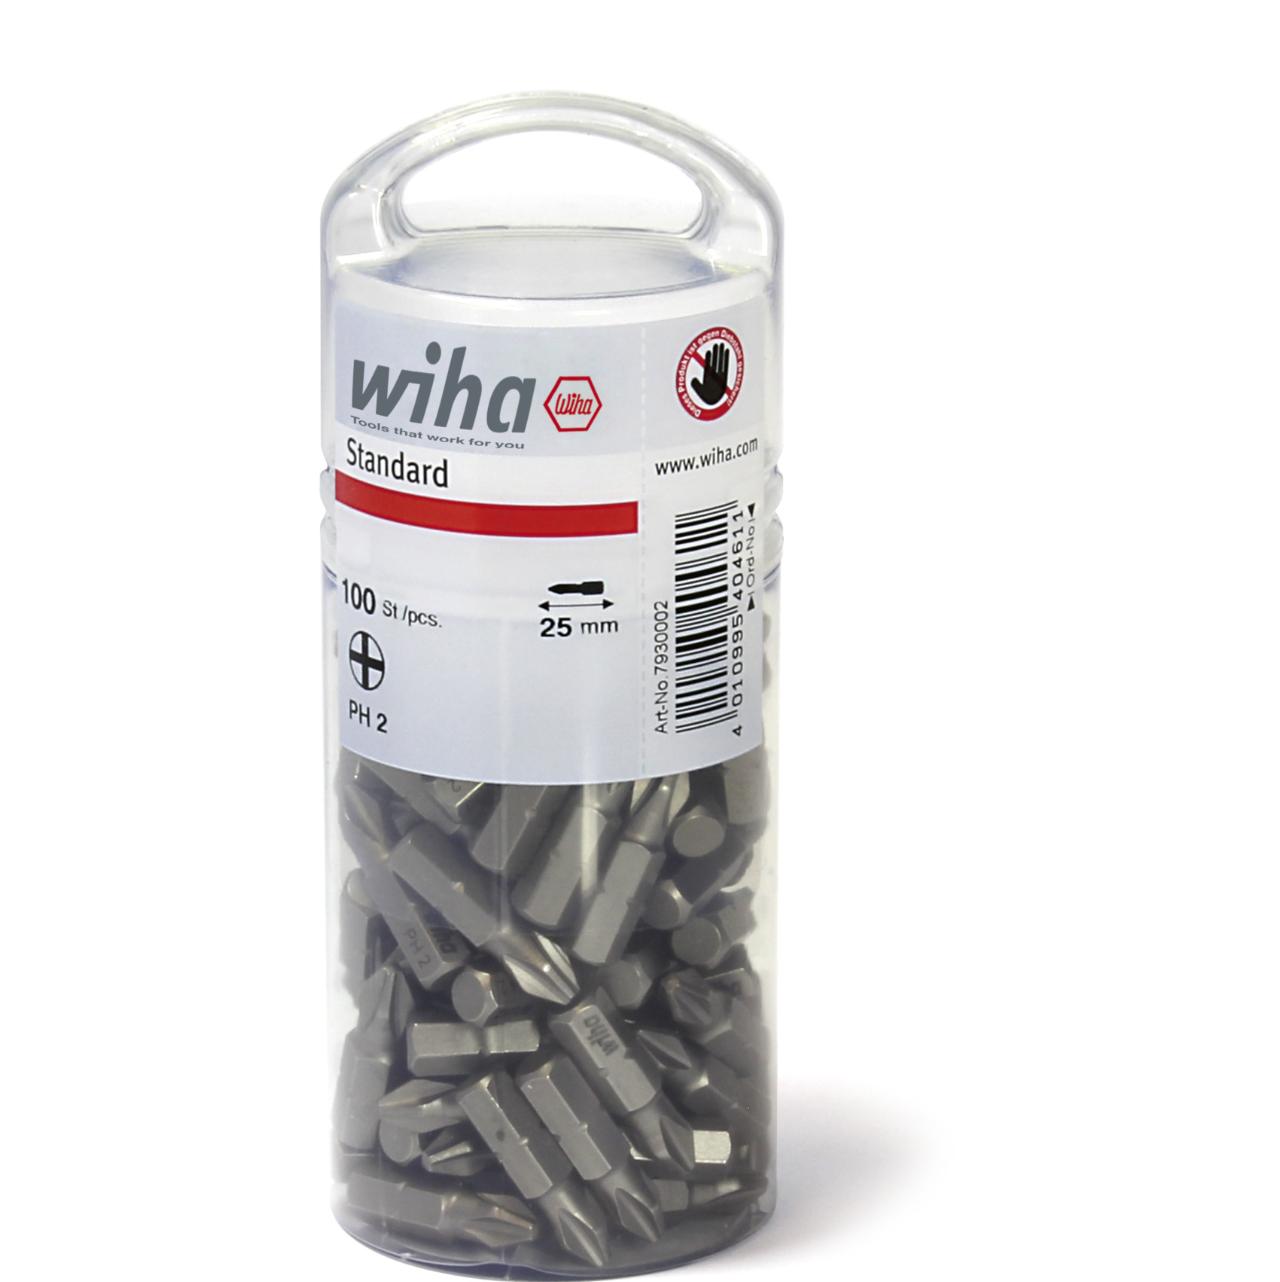 Wiha Bit standard 25 mm Phillips (PH2) med 100 dele, 1/4 i stor pakke (40461)